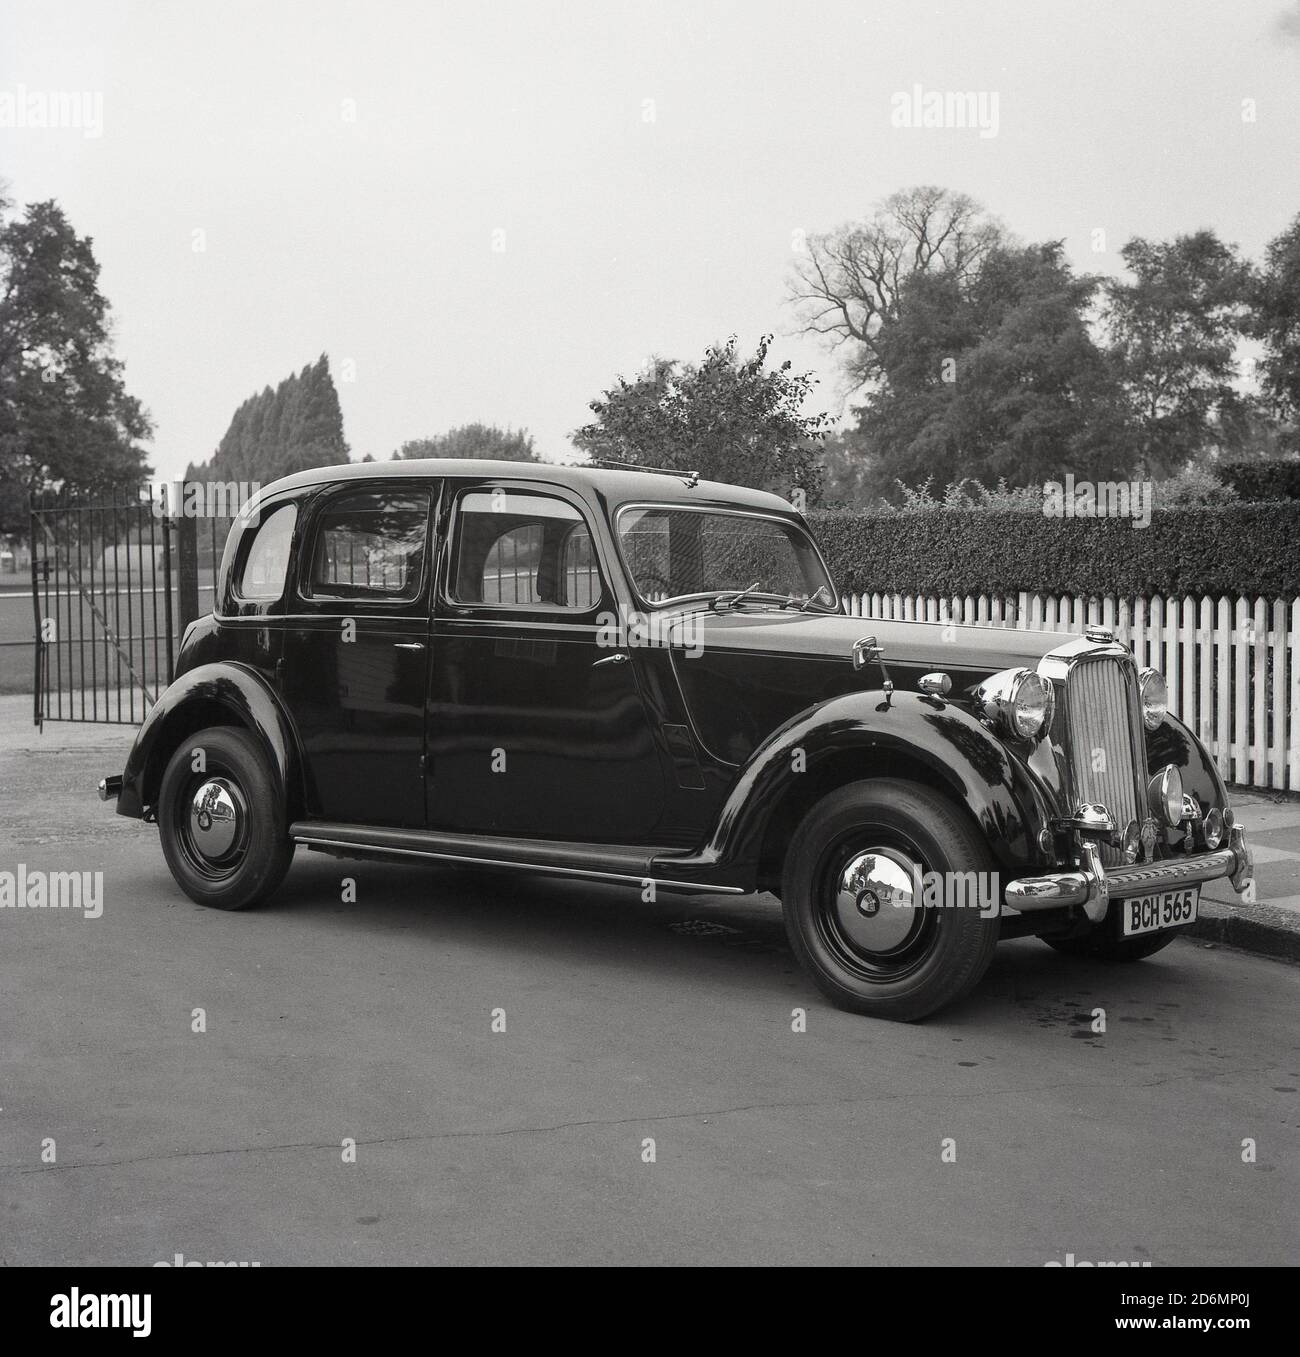 1960s, historisch, ein eleganter Rover 16-Wagen, der an einem Eingang zu einem Vorstadtpark, South London, England, Großbritannien, geparkt ist. Eine viertürige Limousine mit einer Höchstgeschwindigkeit von 77 mph, britische Marke und gebaut zwischen 1937 und 1940. Stockfoto